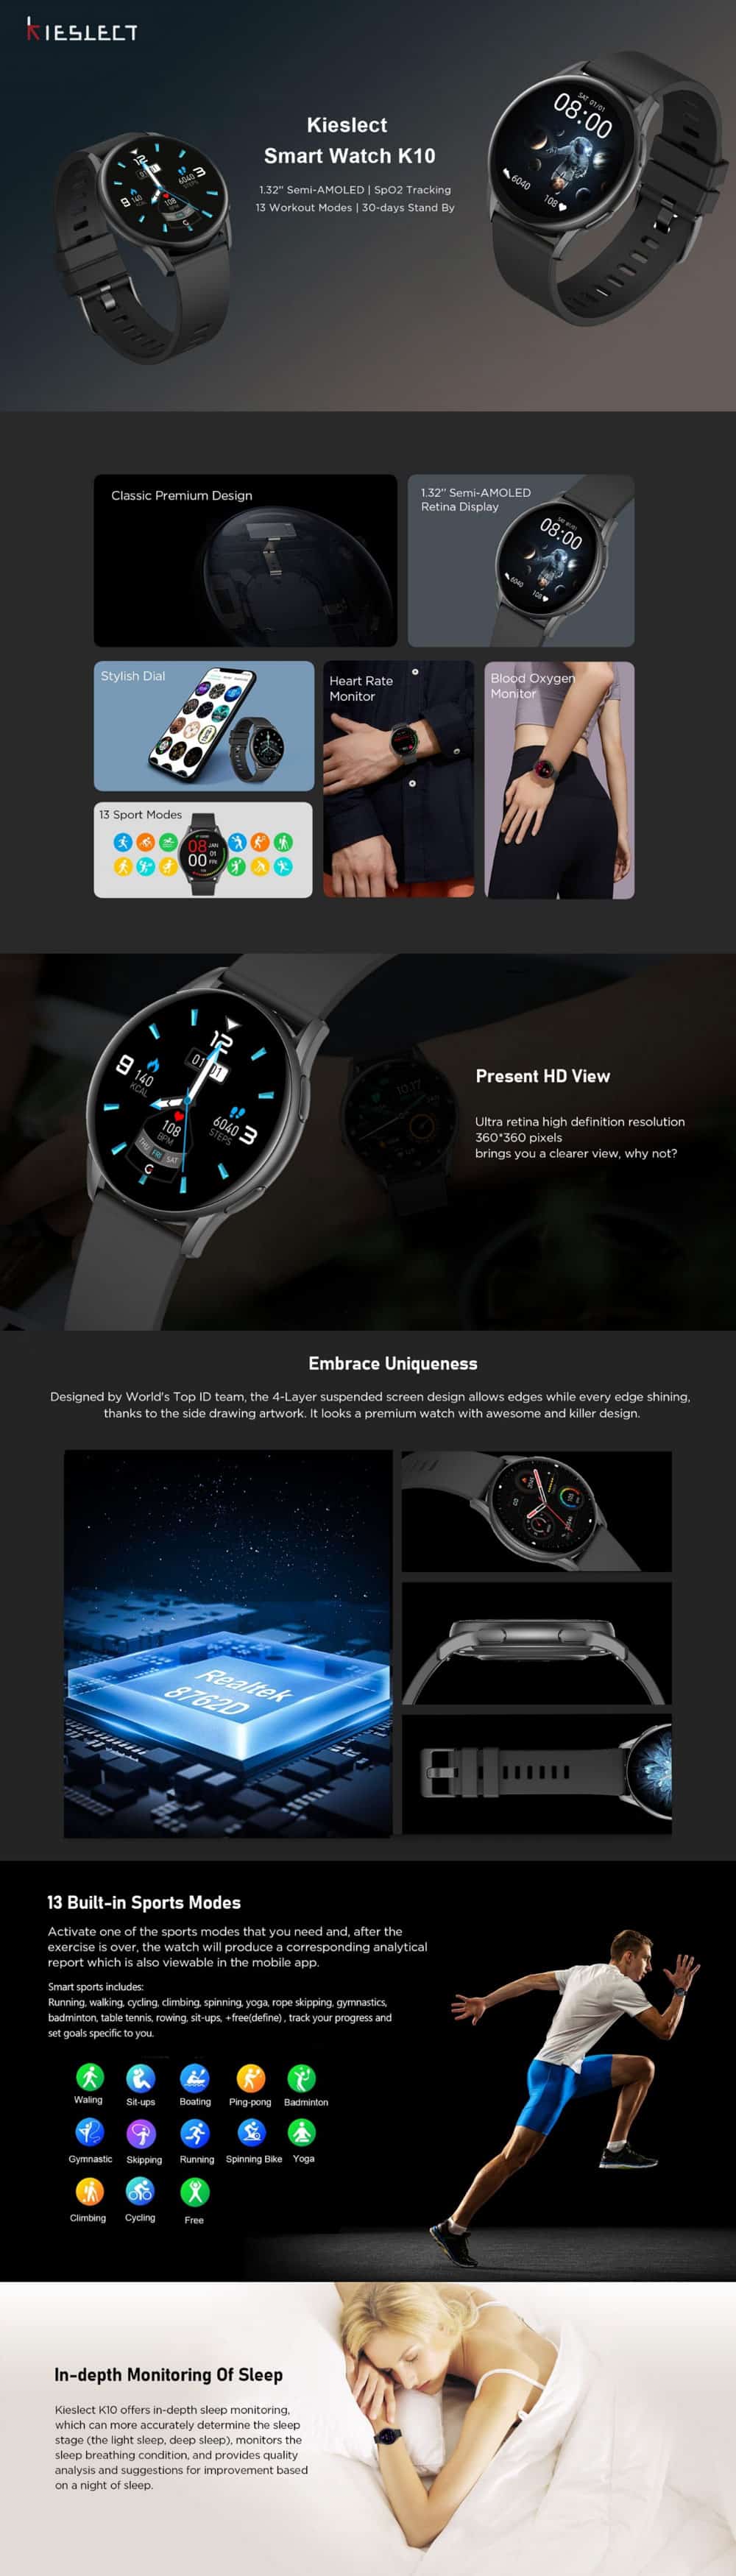 Kieslect K10 Smart Watch 4